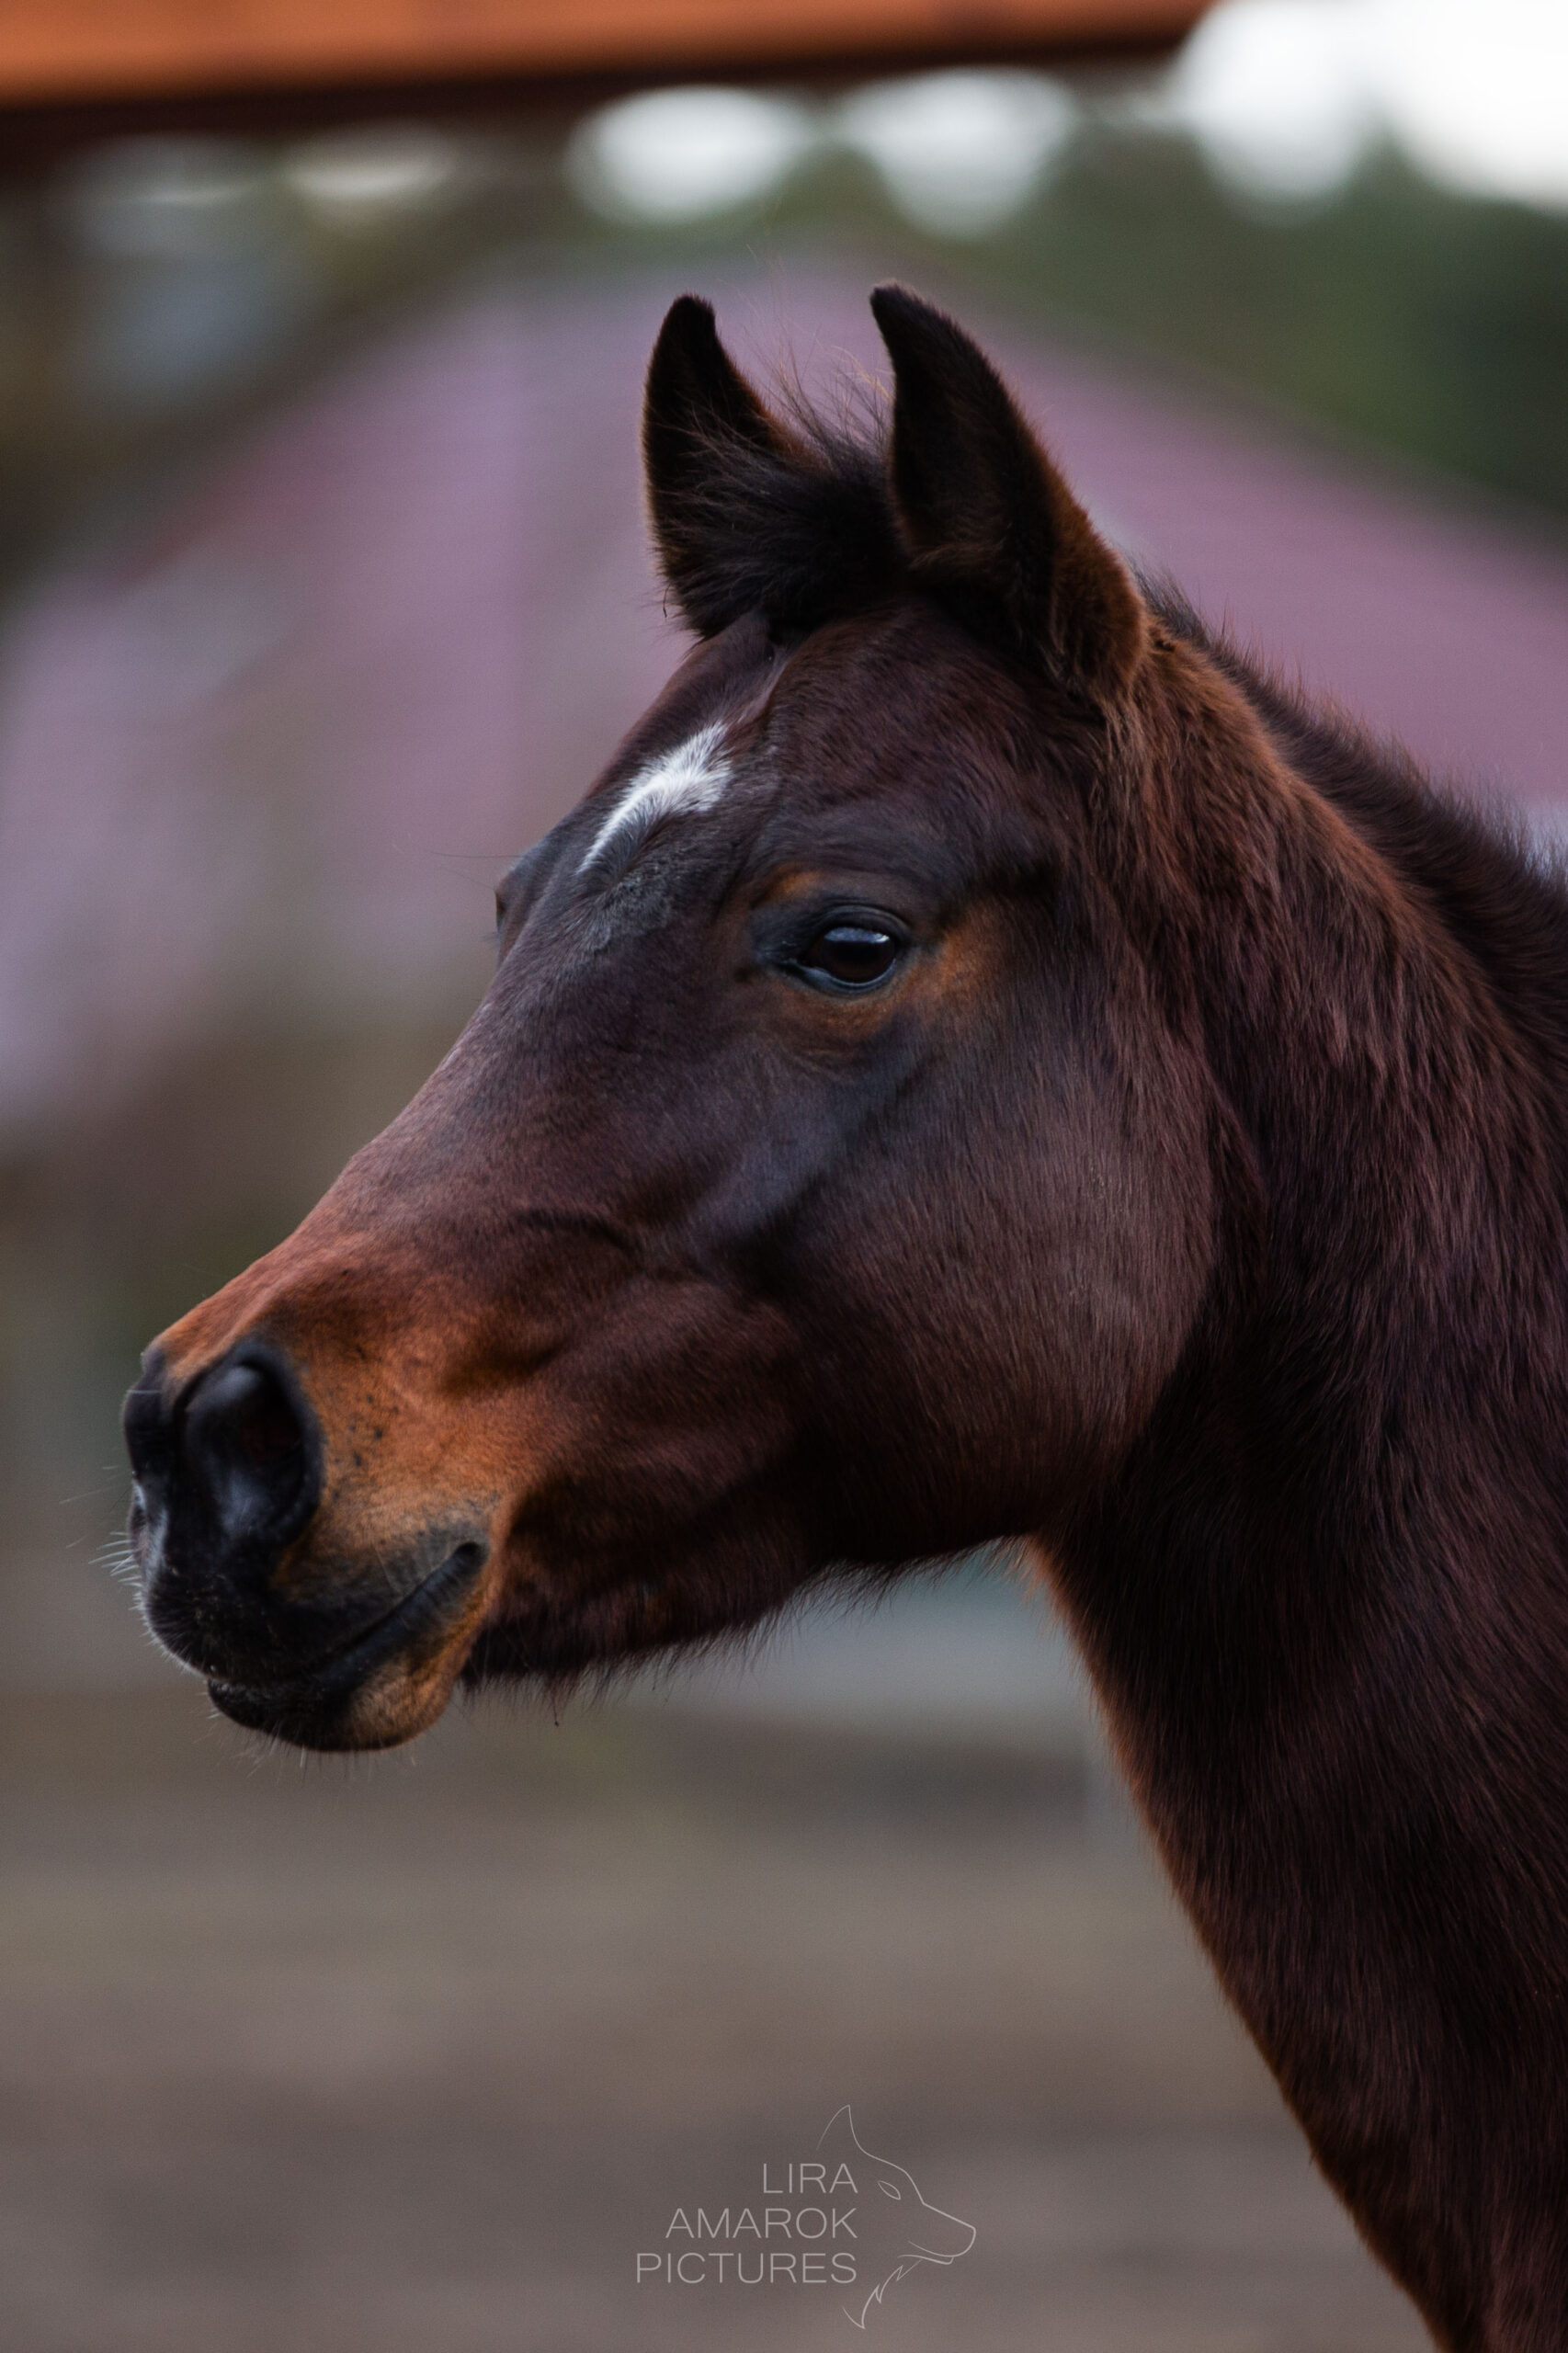 Portrait eines braunen Ponys, fotografiert von LiraAmarokPictures